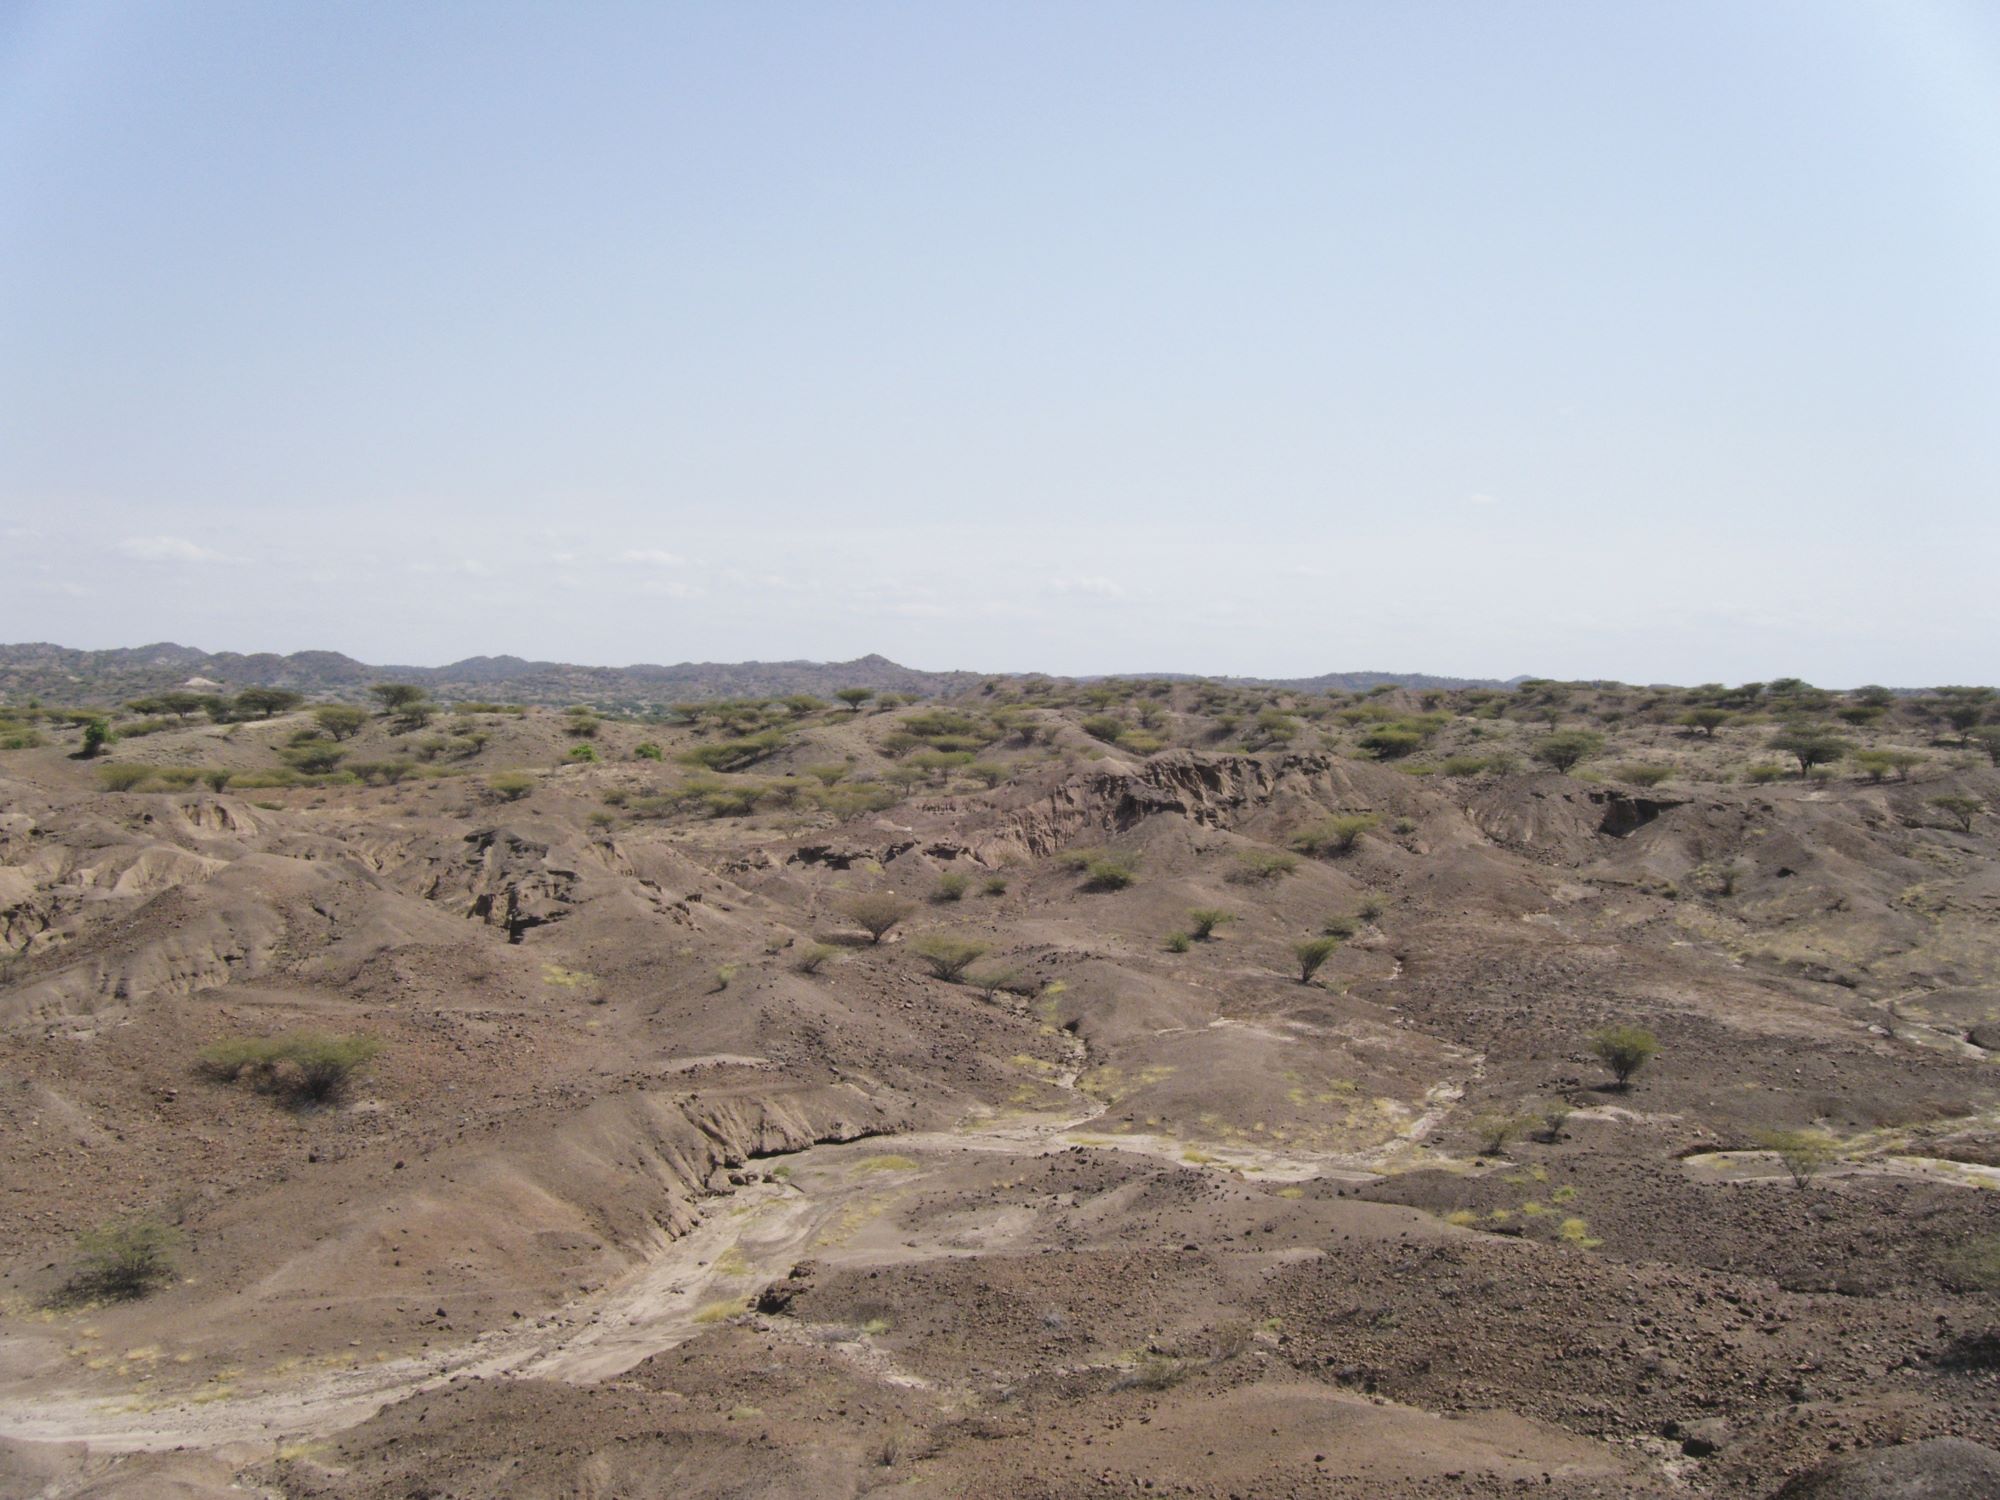 Terrain à l’ouest du lac Turkana, région riche en fossiles d’hominines. © S. Prat, WTAP, ANR HOMTECH CNRS